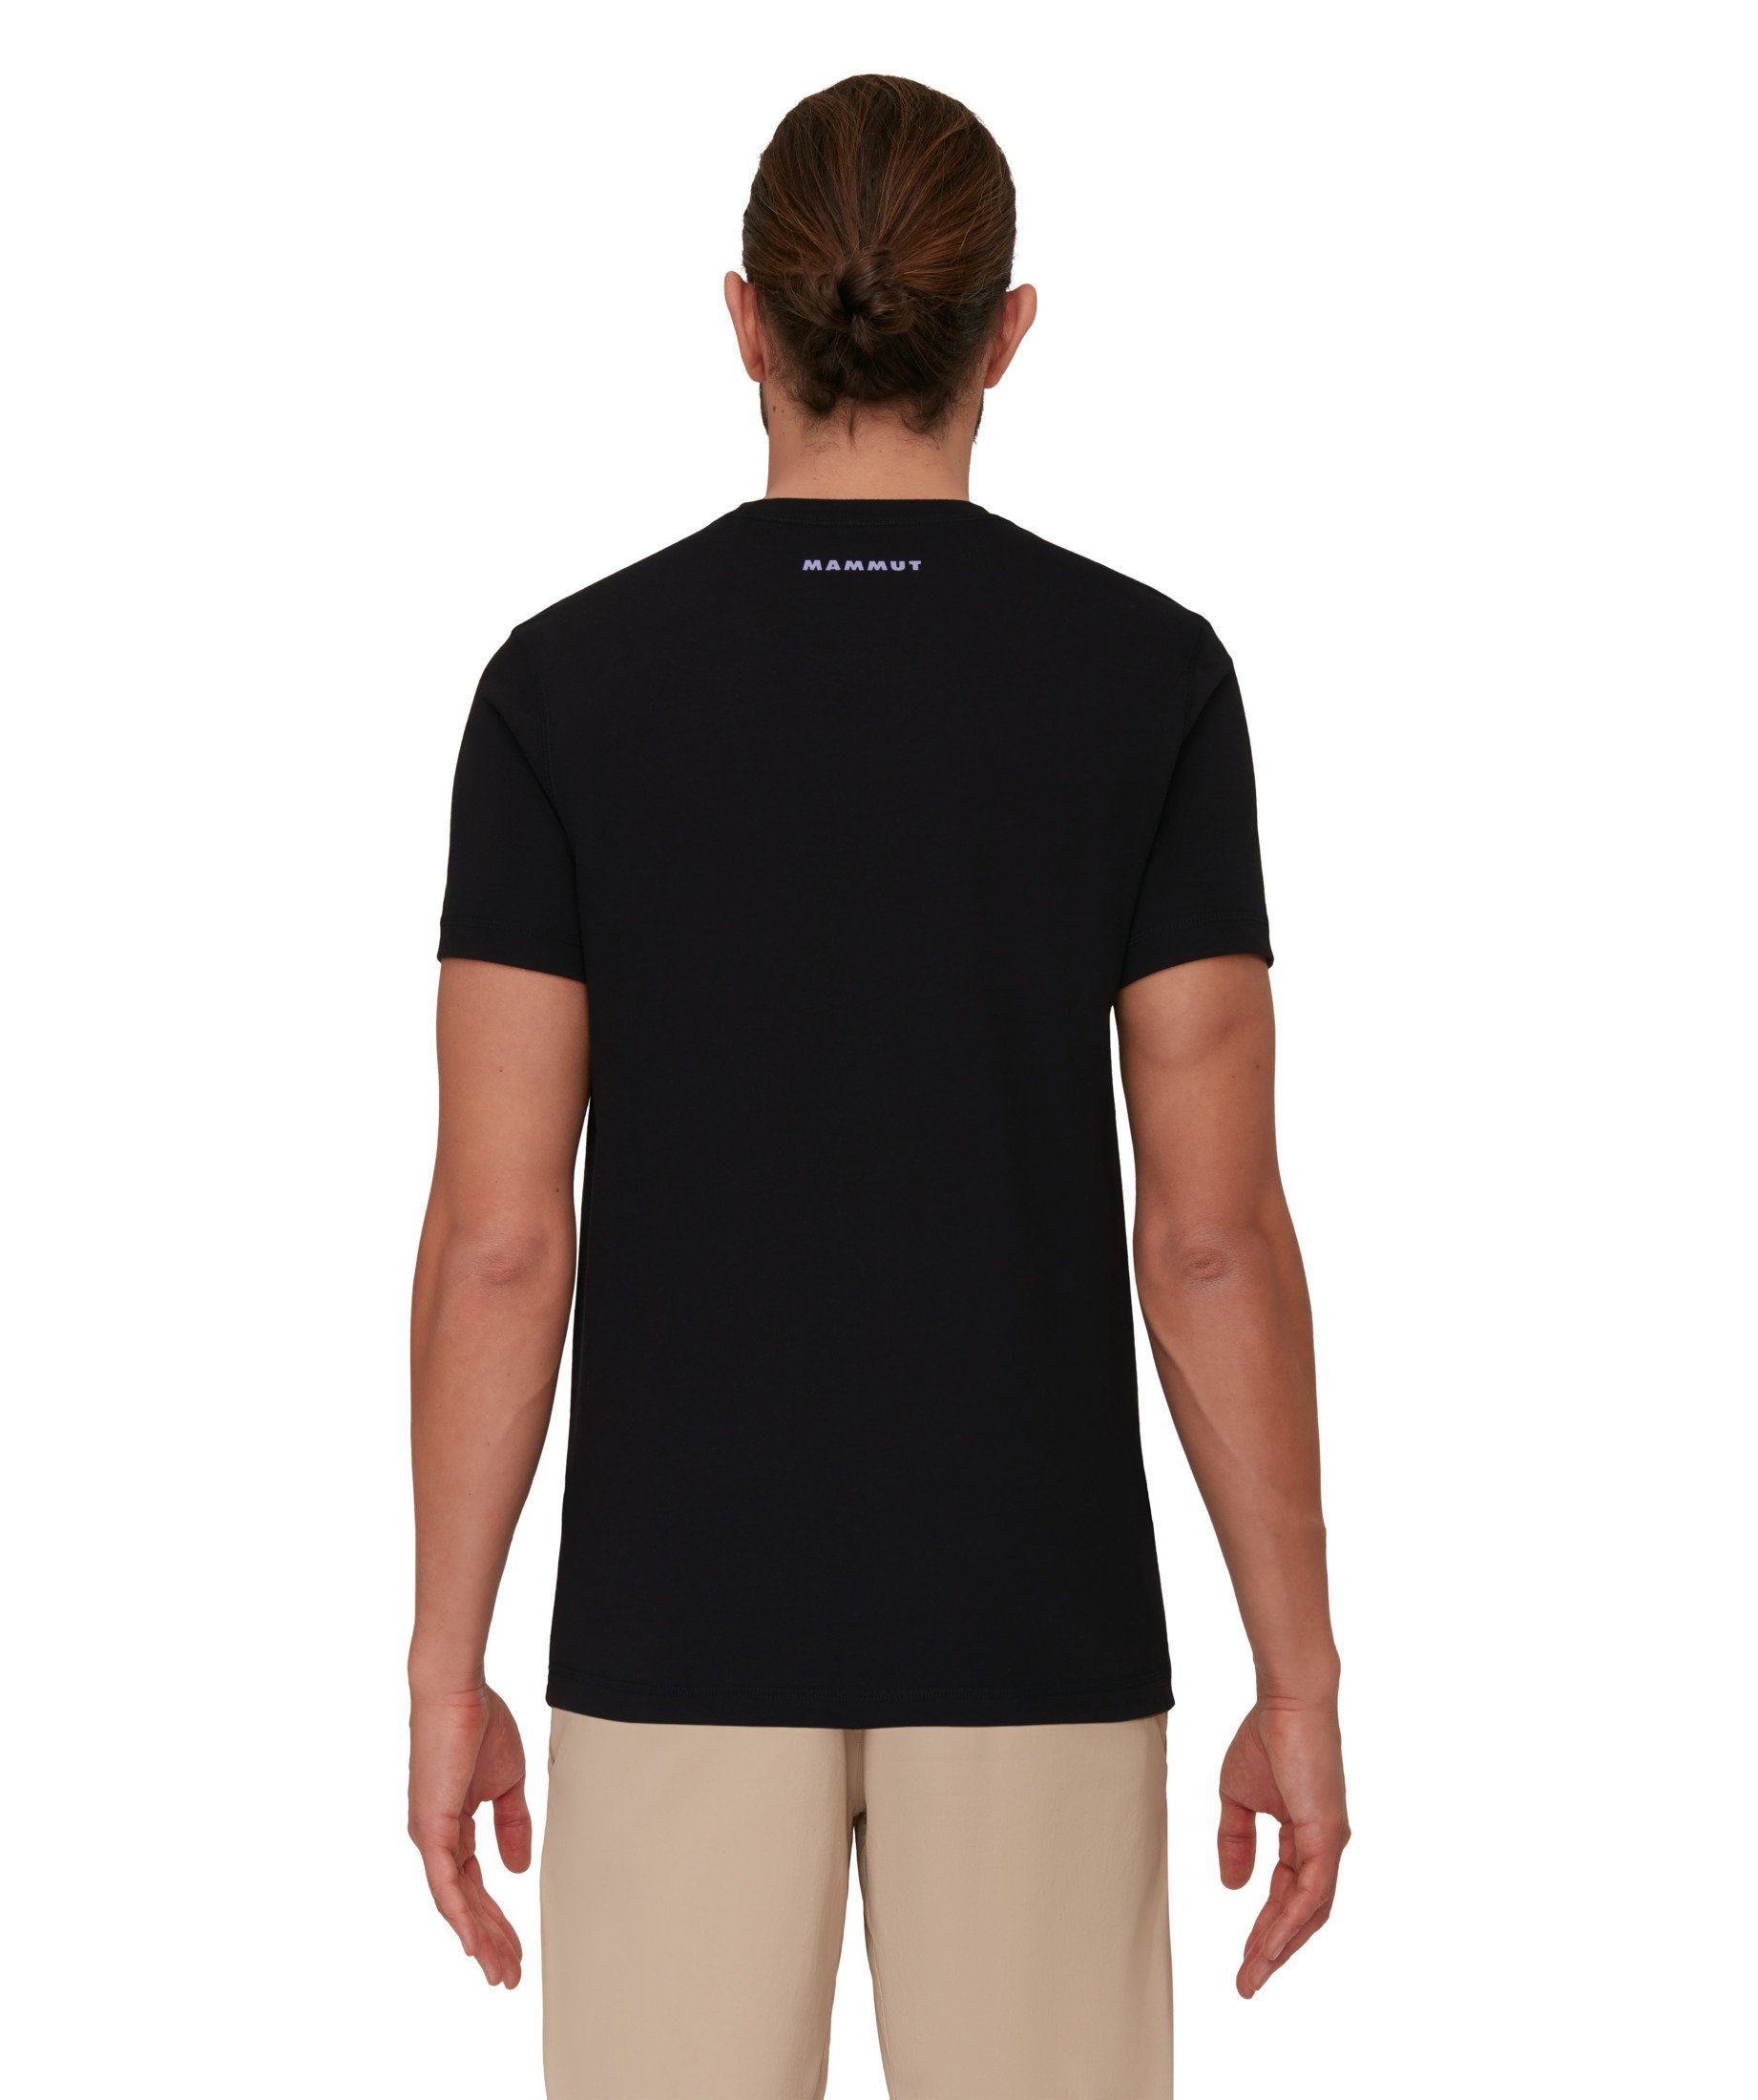 Mammut T-Shirt Men black Core Mammut Line T-Shirt First